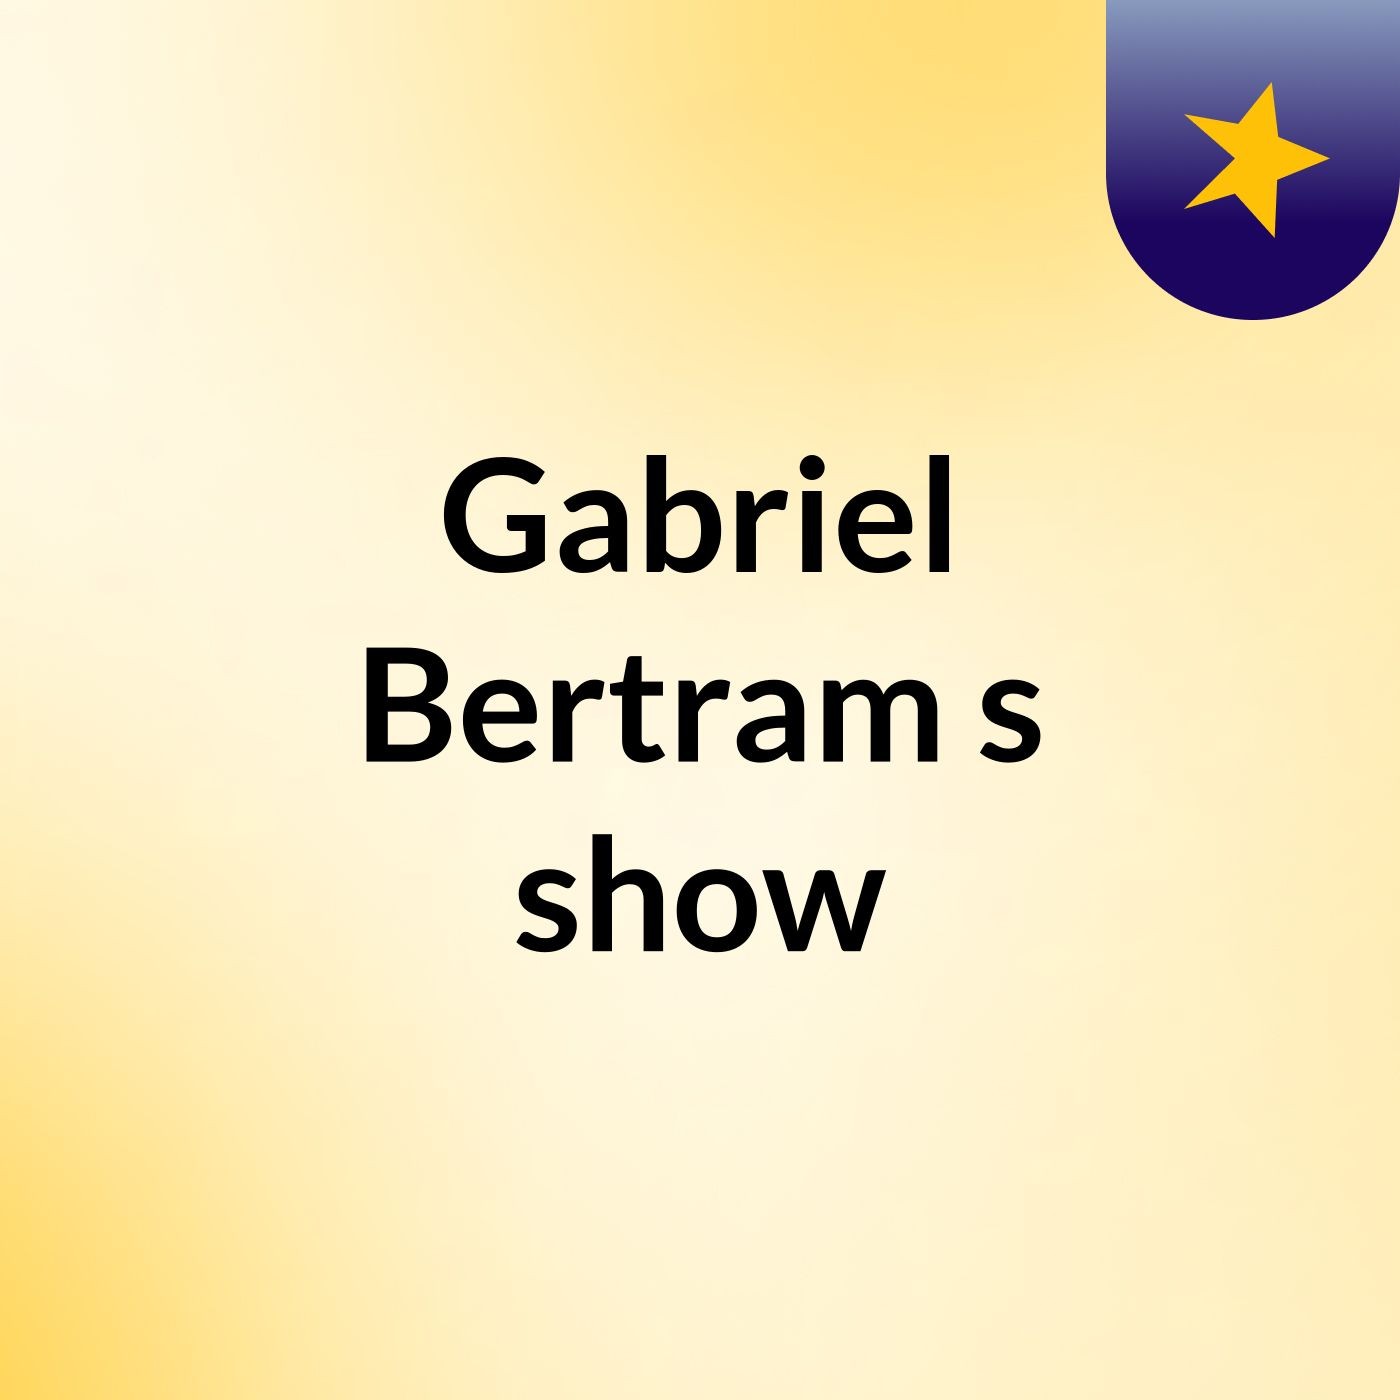 Gabriel Bertram's show